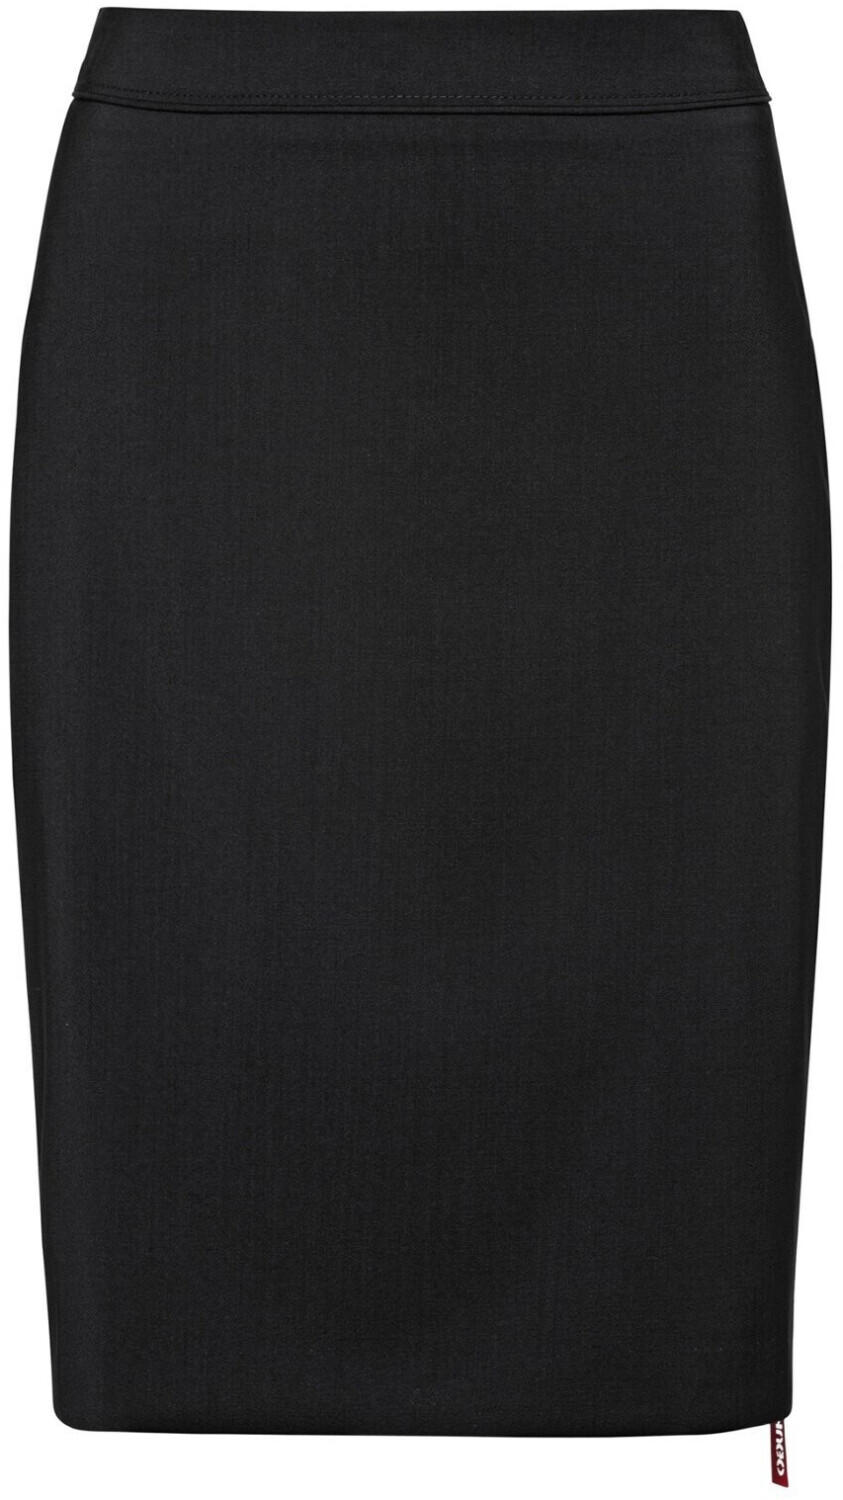 Hugo Boss The Pencil Skirt black (50414364001)